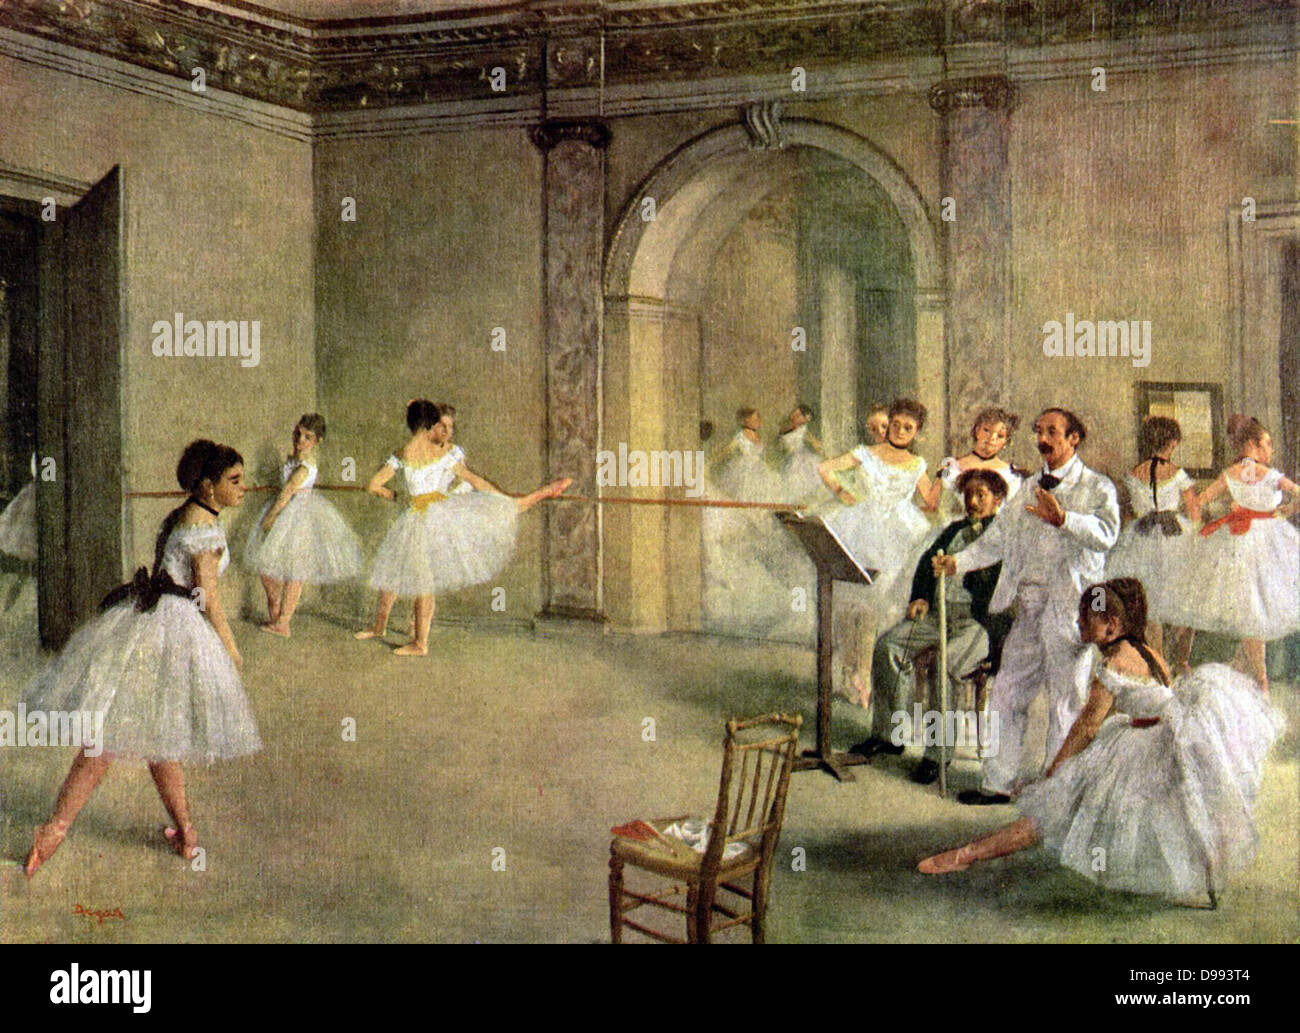 Prove di balletto sul set (1874) di Edgar Degas (19 luglio 1834 - 27 settembre 1917), artista francese famoso per il suo lavoro nella pittura, scultura, incisione e disegno. Egli è considerato come uno dei fondatori di impressionismo sebbene egli ha respinto il termine, Foto Stock